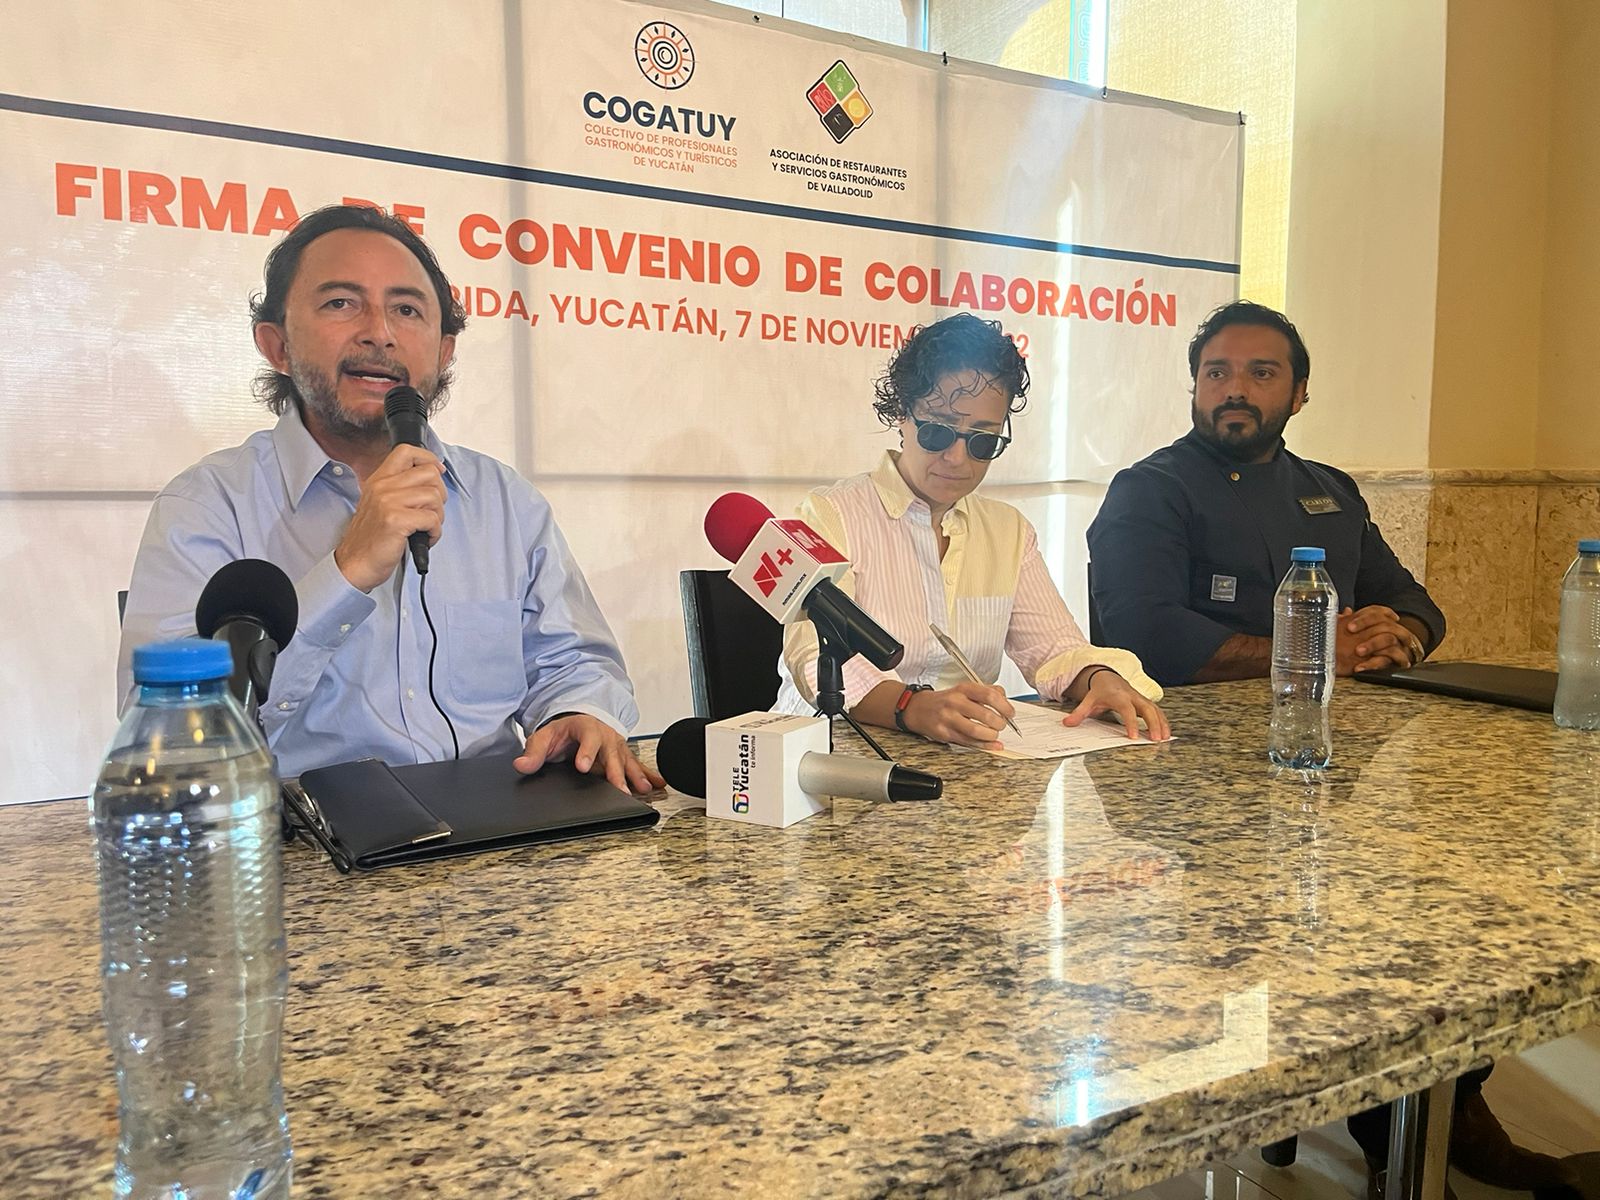 Restauranteros de Mérida y Valladolid firman convenio de colaboración para impulsarse mutuamente